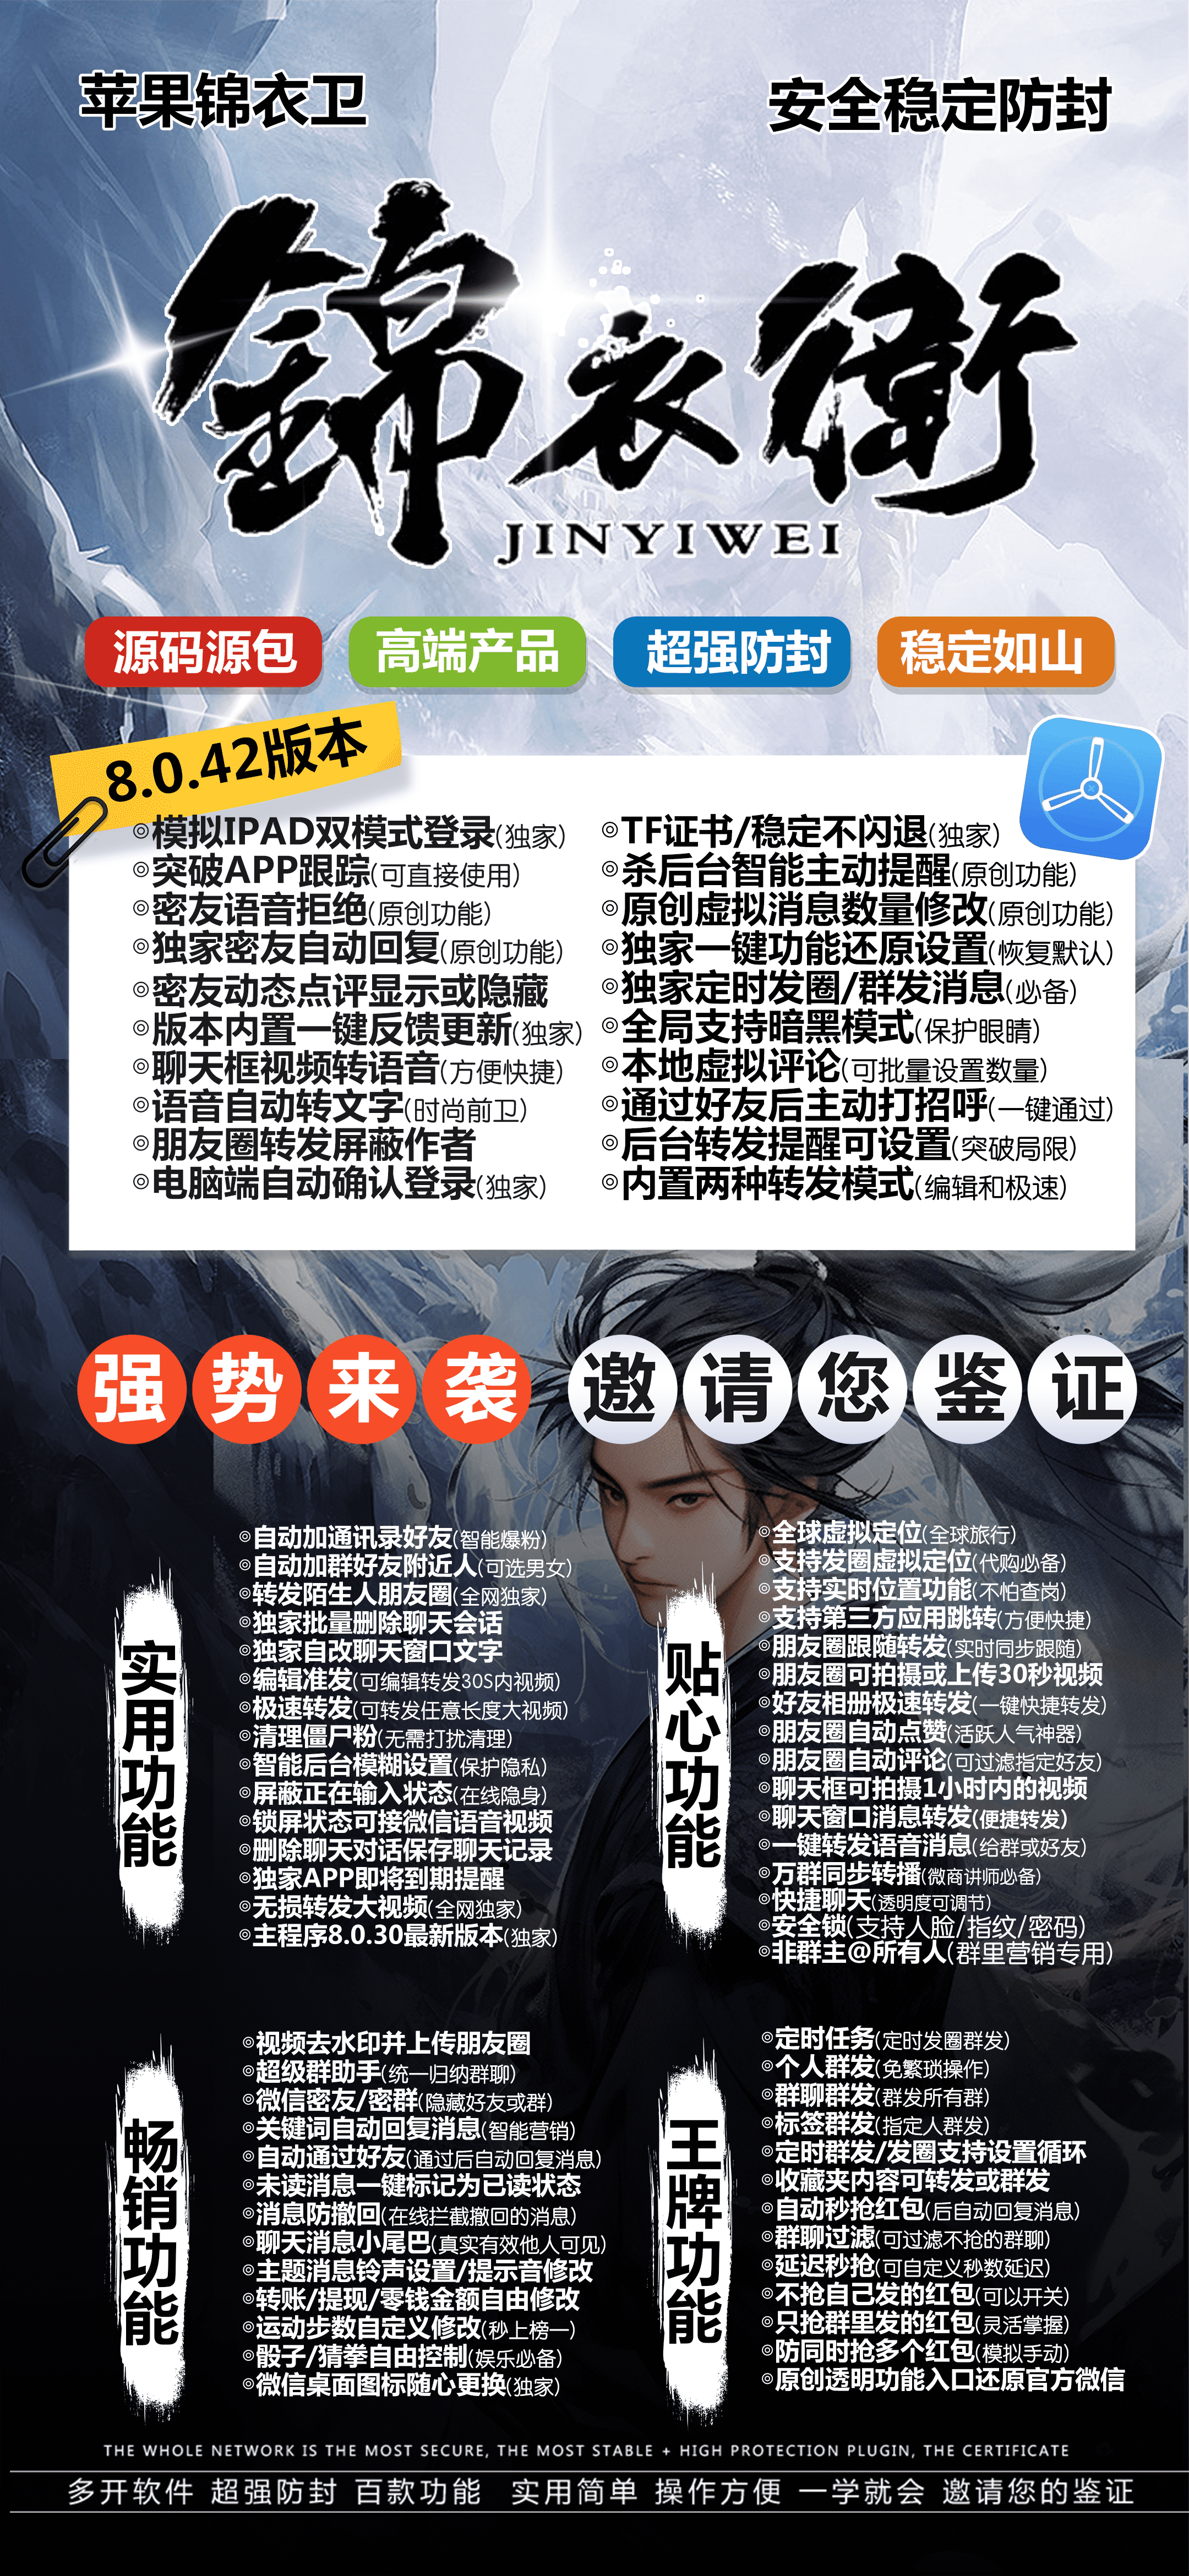 【苹果锦衣卫官网】-微信/分身/多开/软件-激活码购买以及下载-TF模式上架